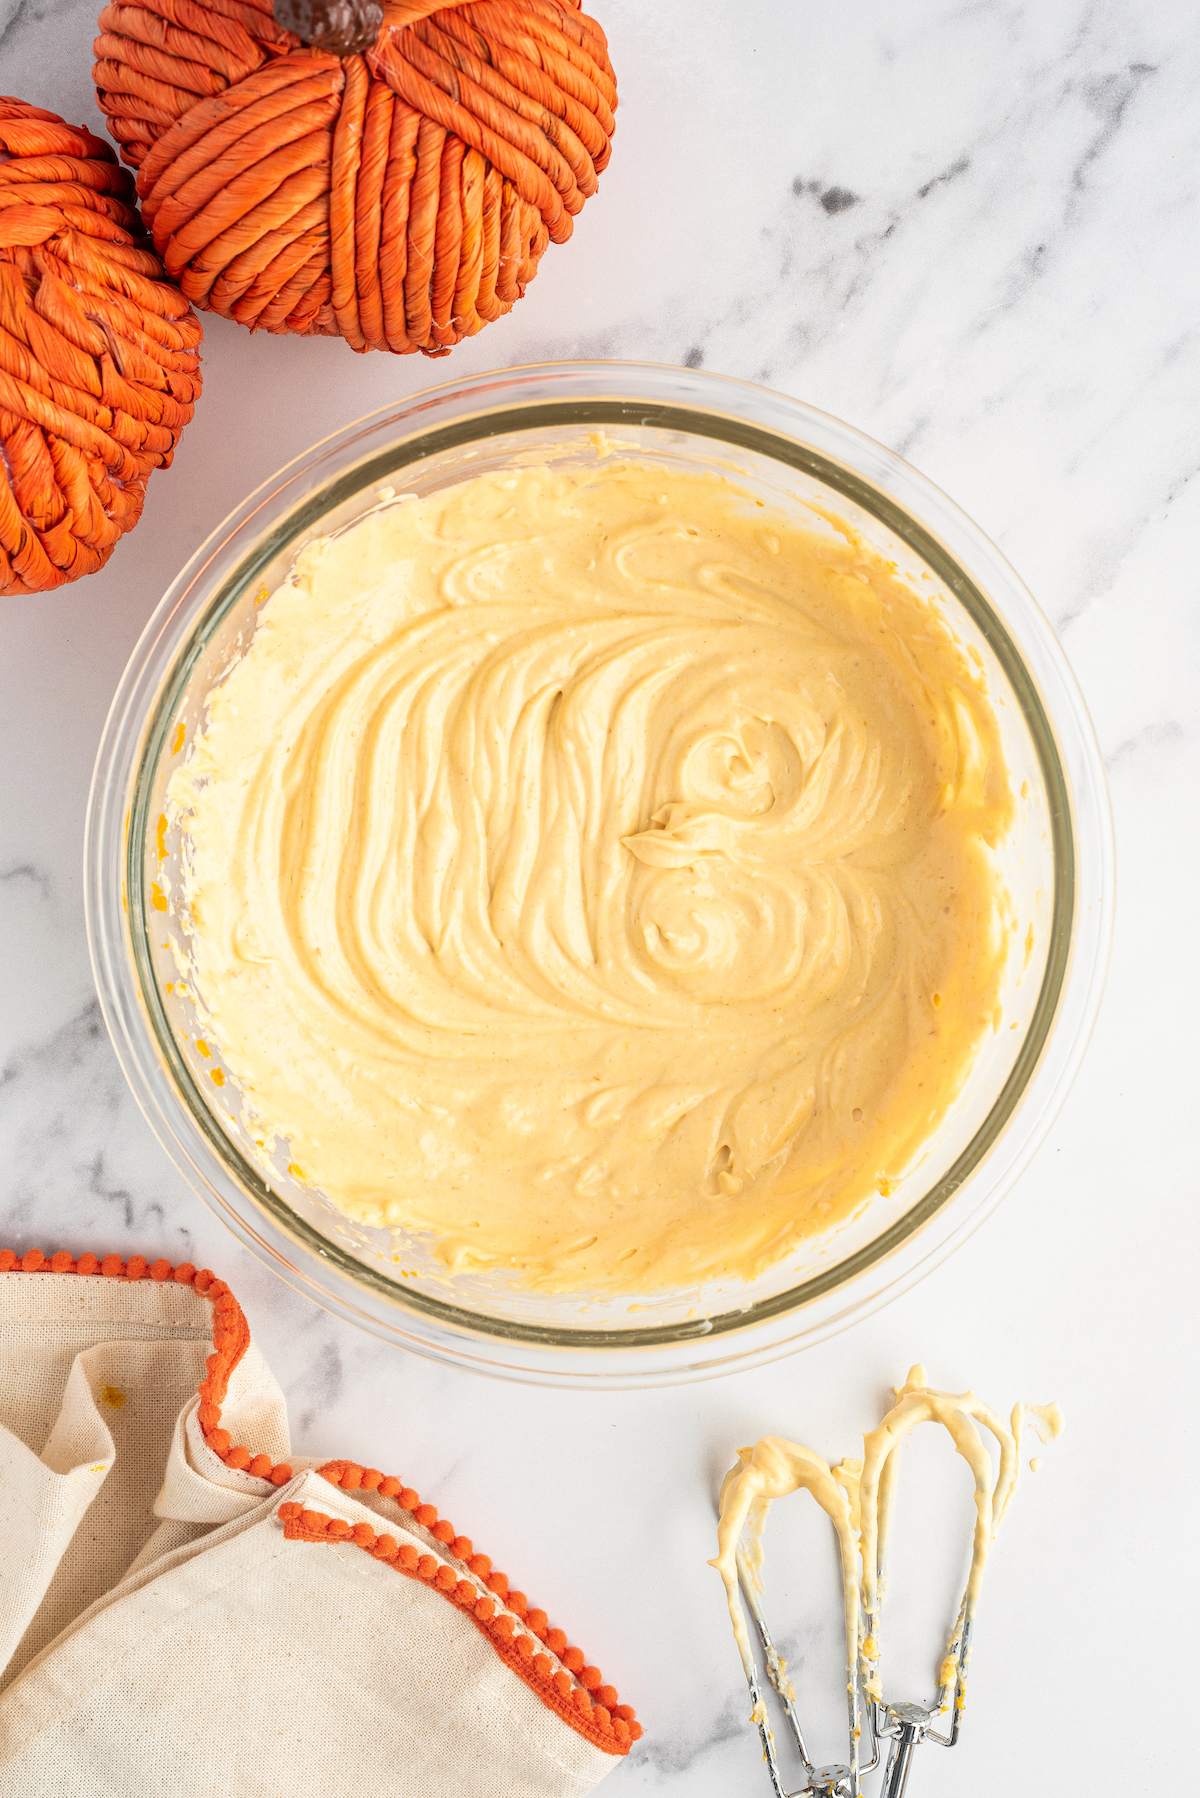 Whipped cinnamon pumpkin cream cheese dip in a bowl.